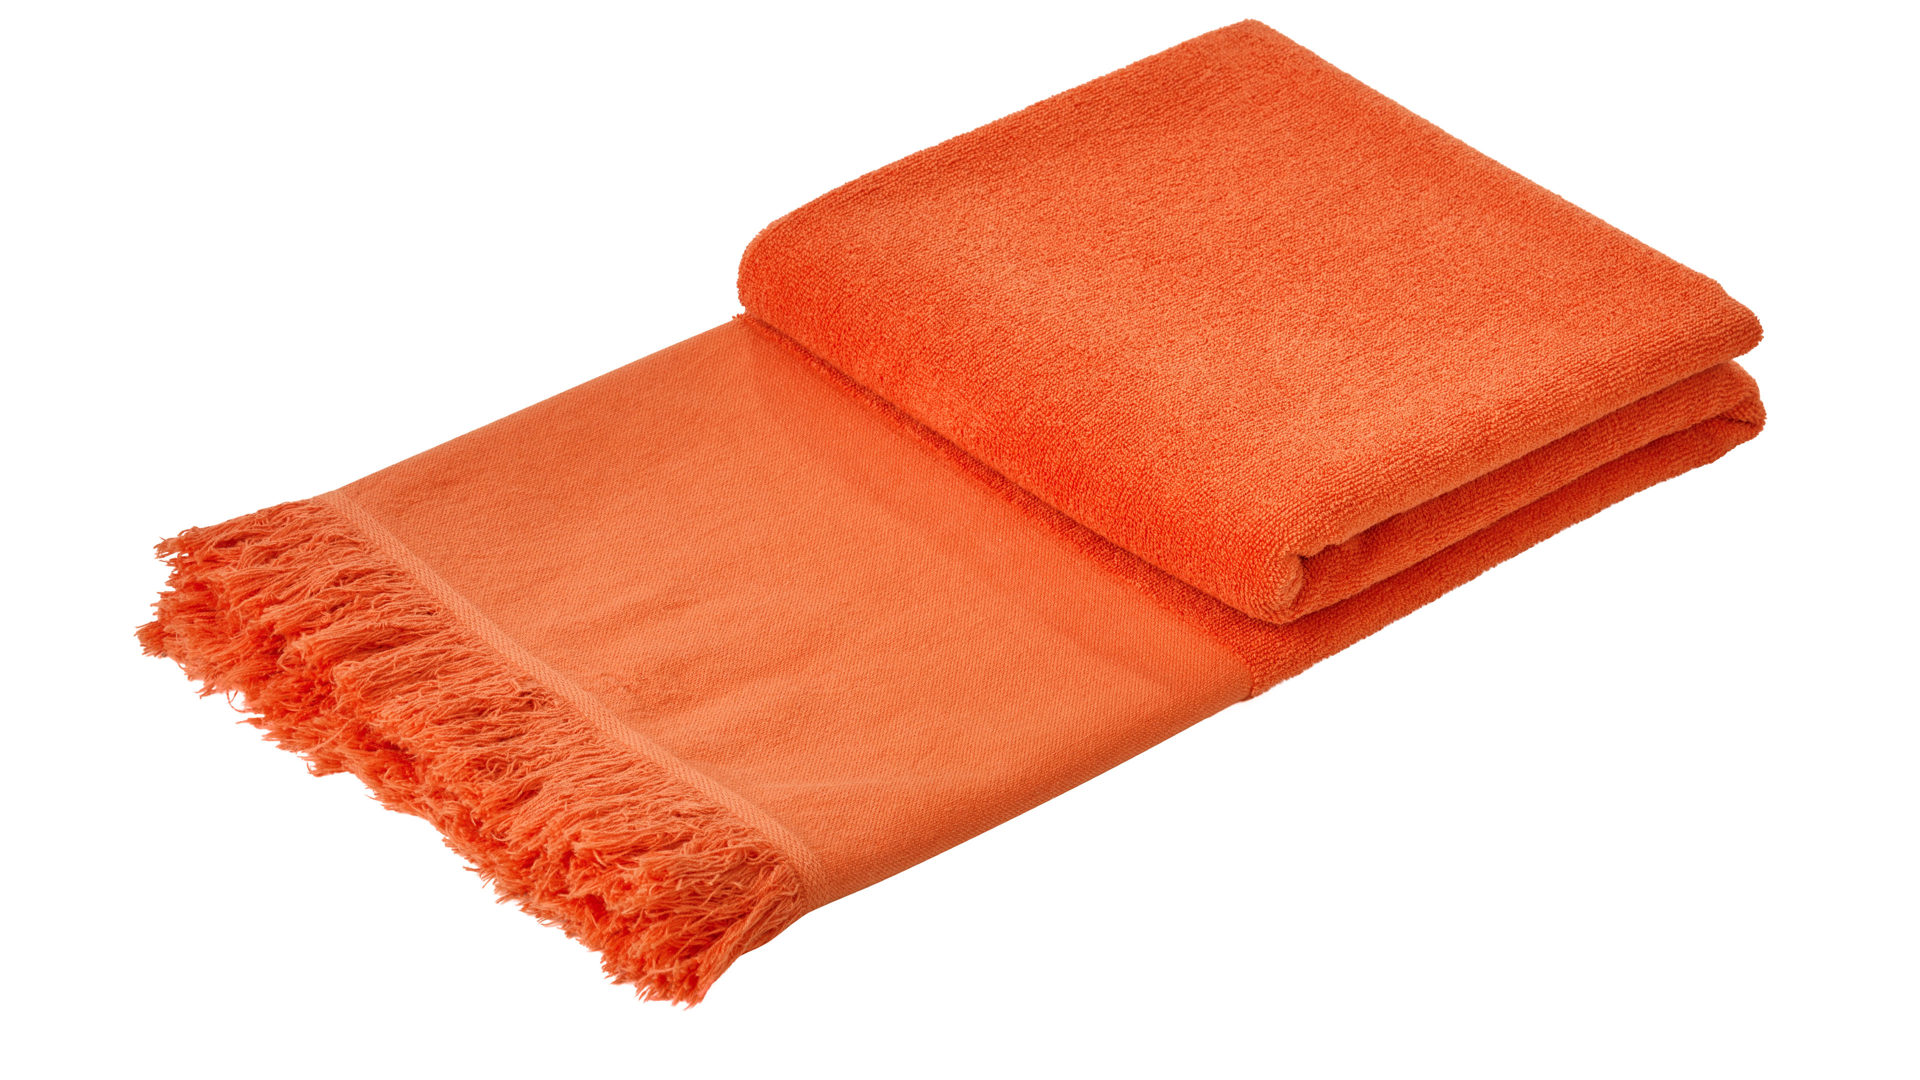 Hamamtuch Done® by karabel home company aus Stoff in Orange DONE® Hamamtuch Caprice korallenfarbene Baumwolle – ca. 95 x 180 cm